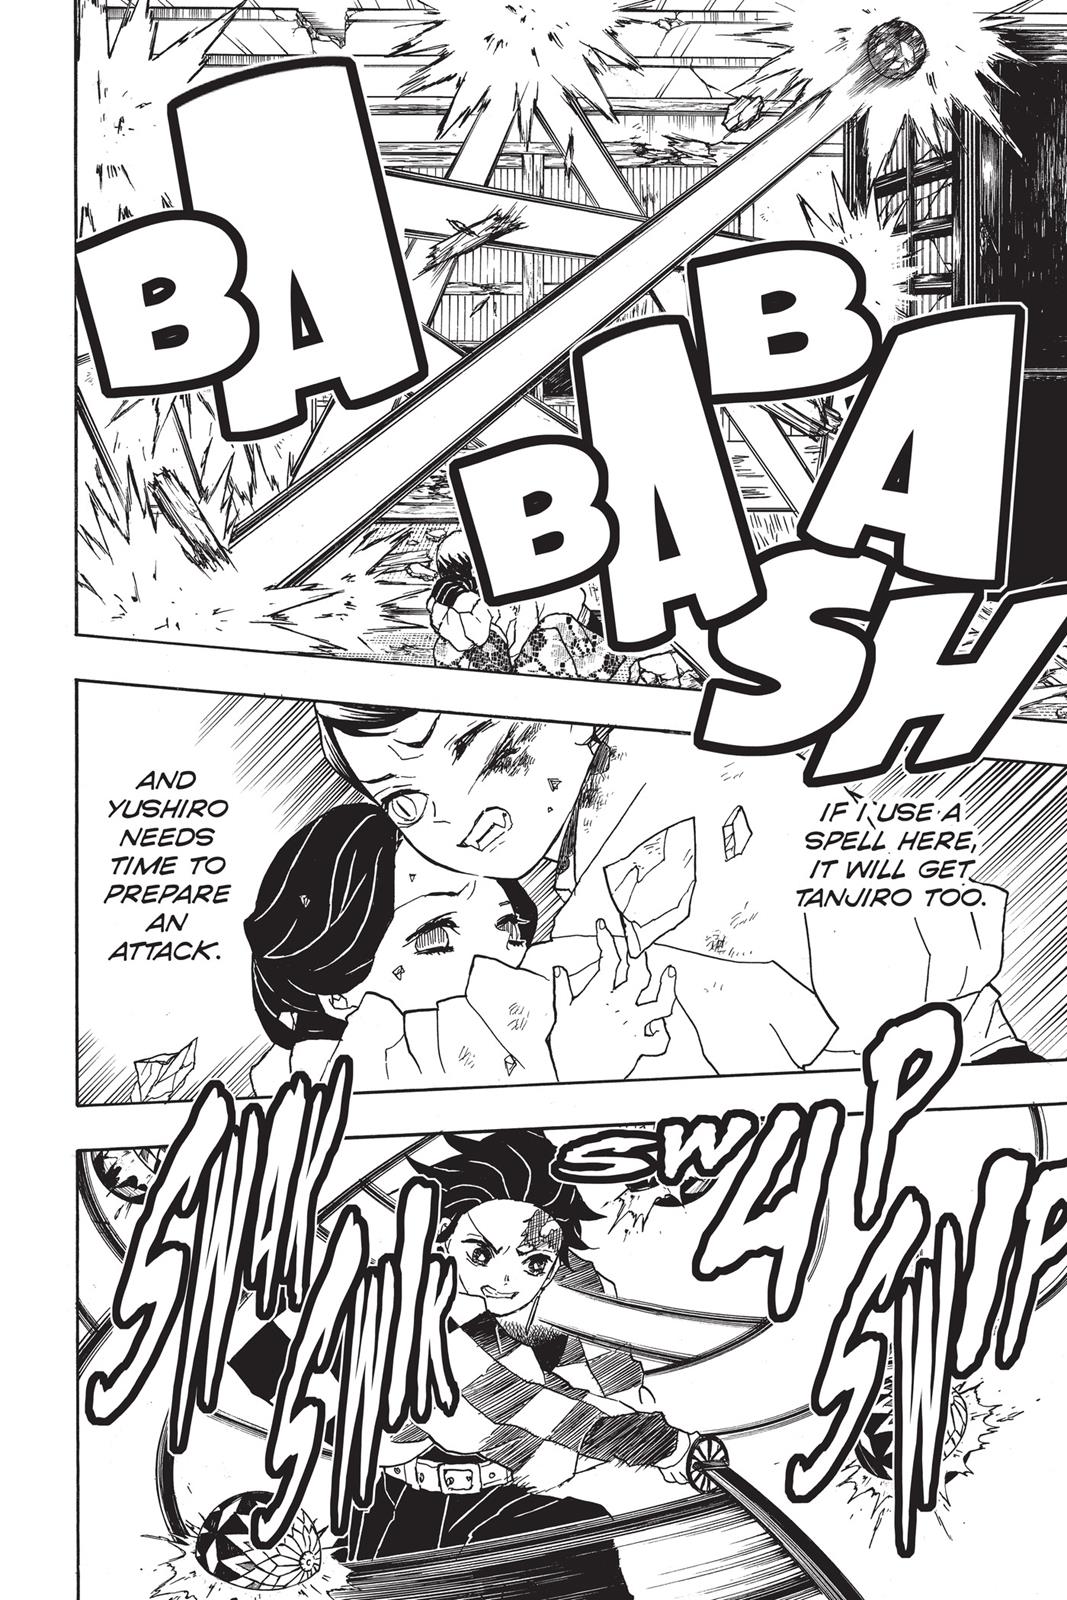 Demon Slayer Manga Manga Chapter - 16 - image 16